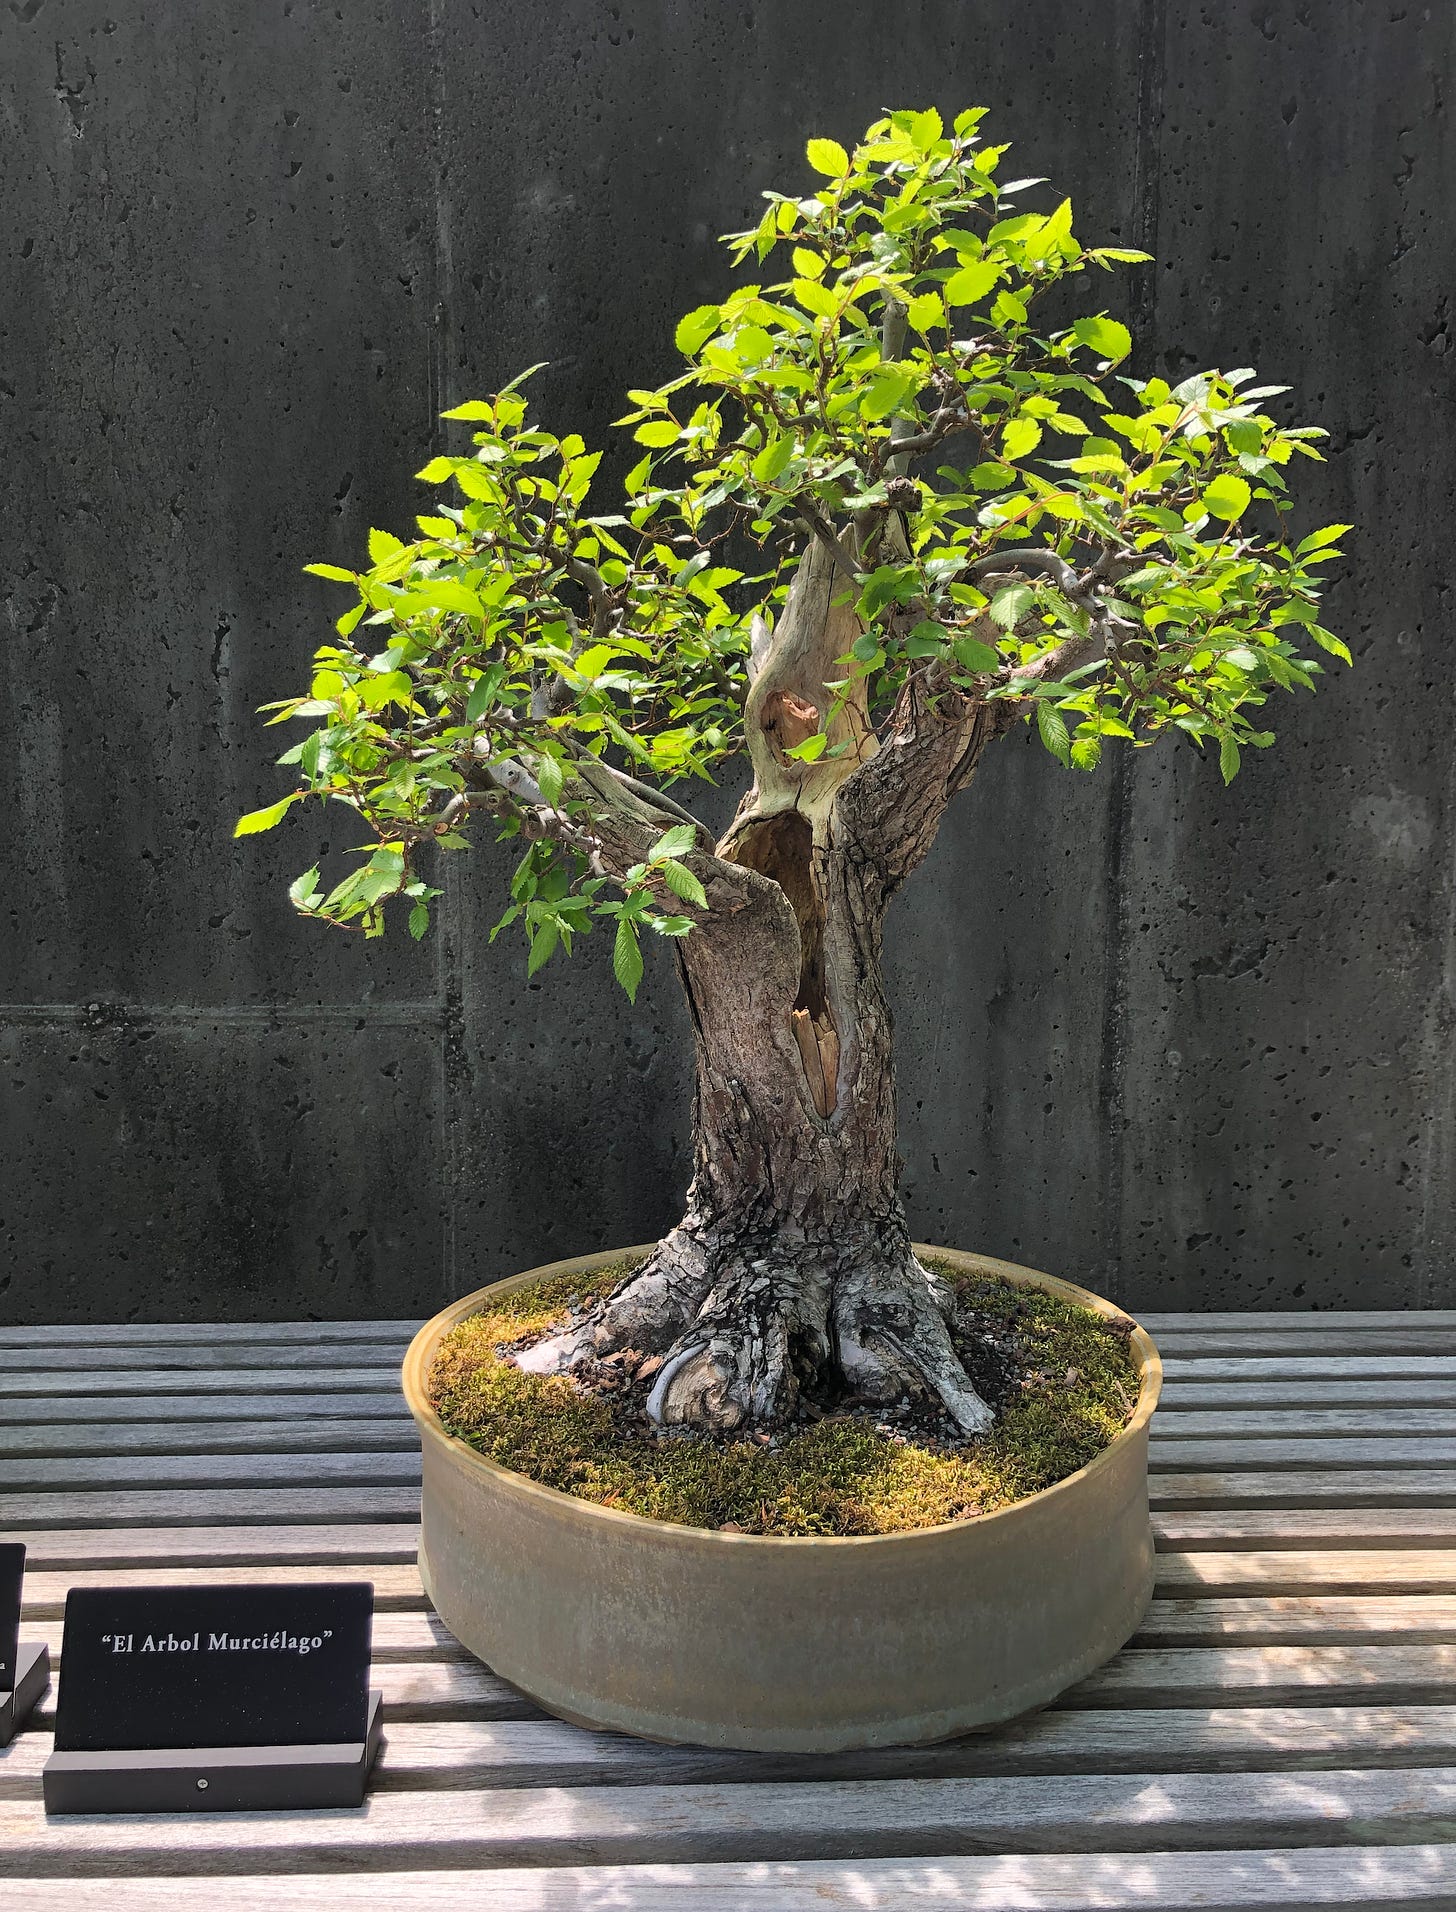 Bonsai tree named "El Arbor Murcielago".